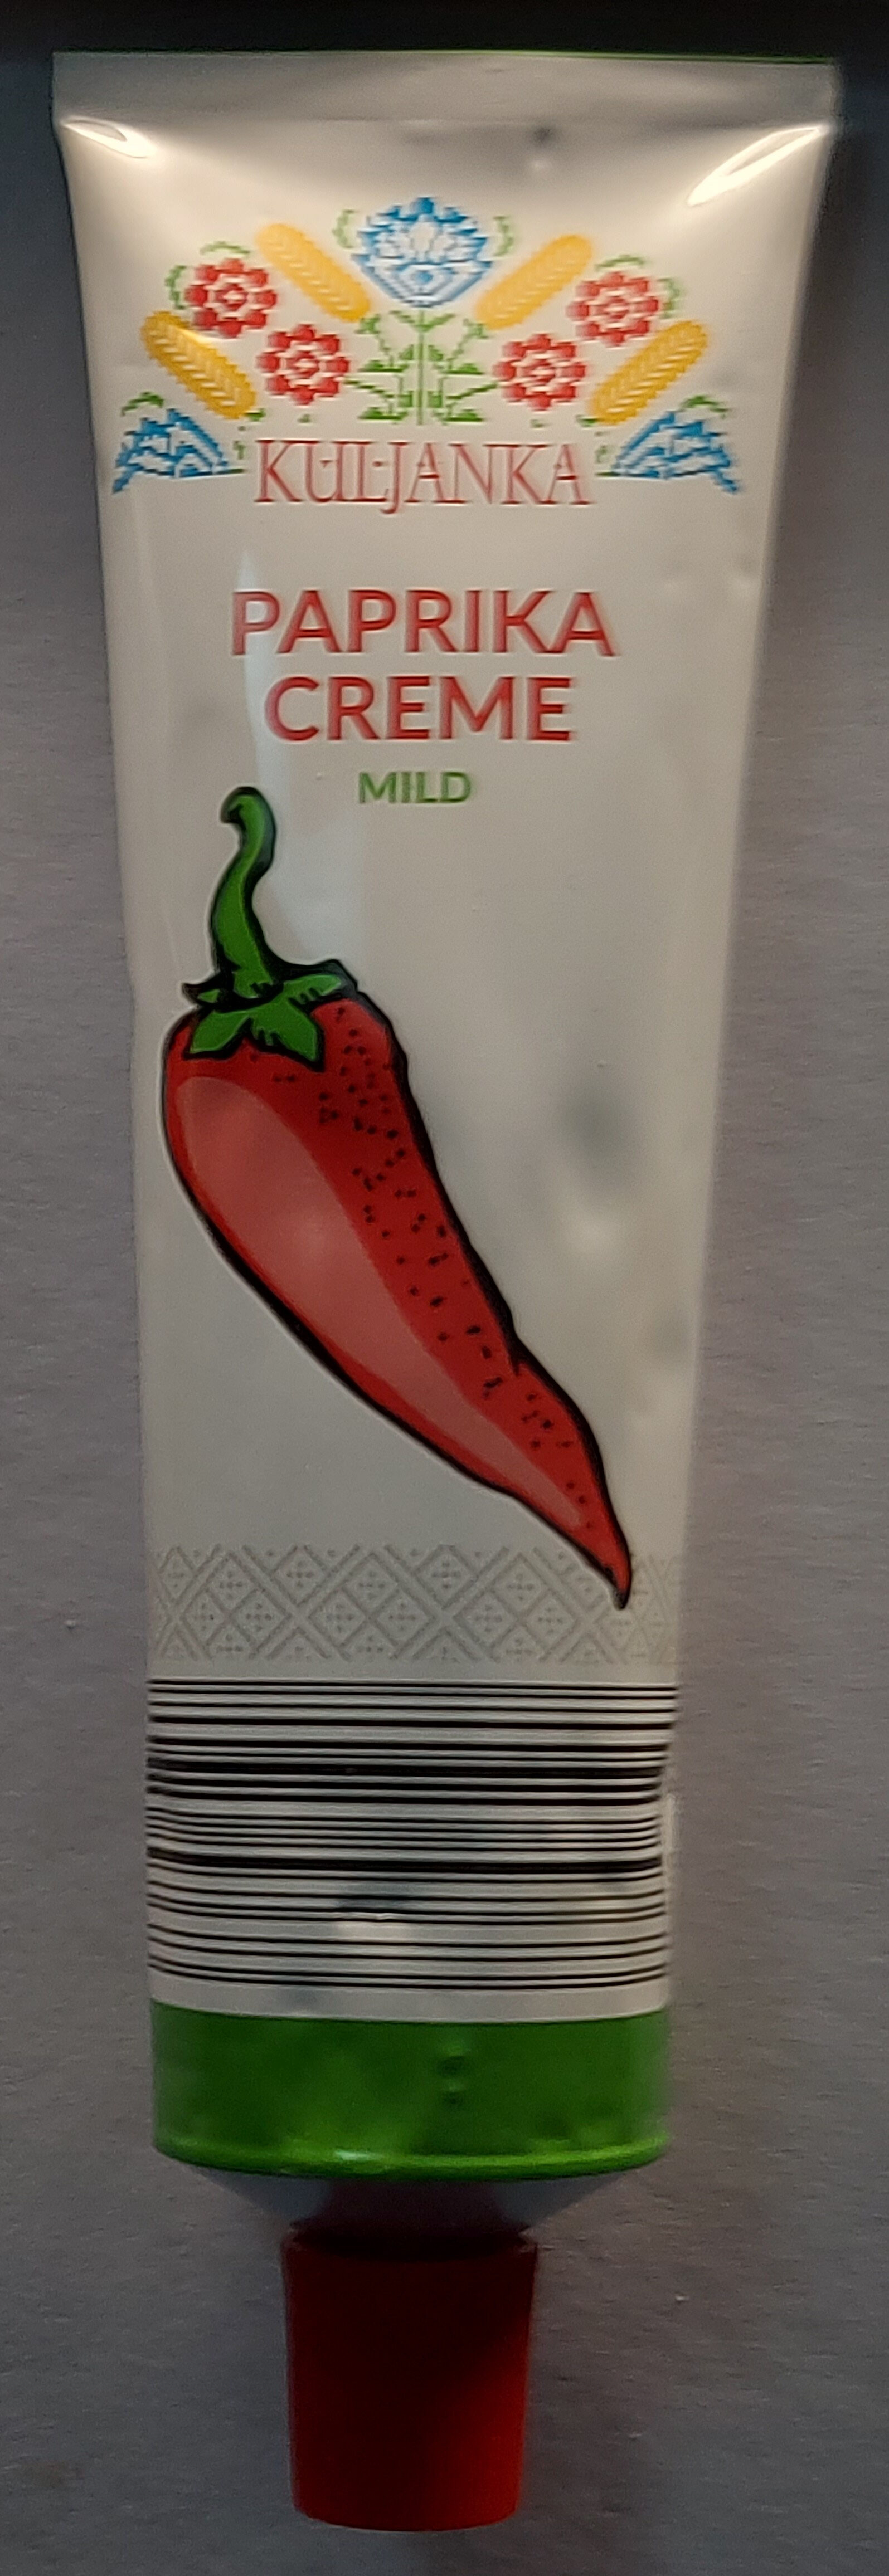 Paprika Creme Mild - Producto - de